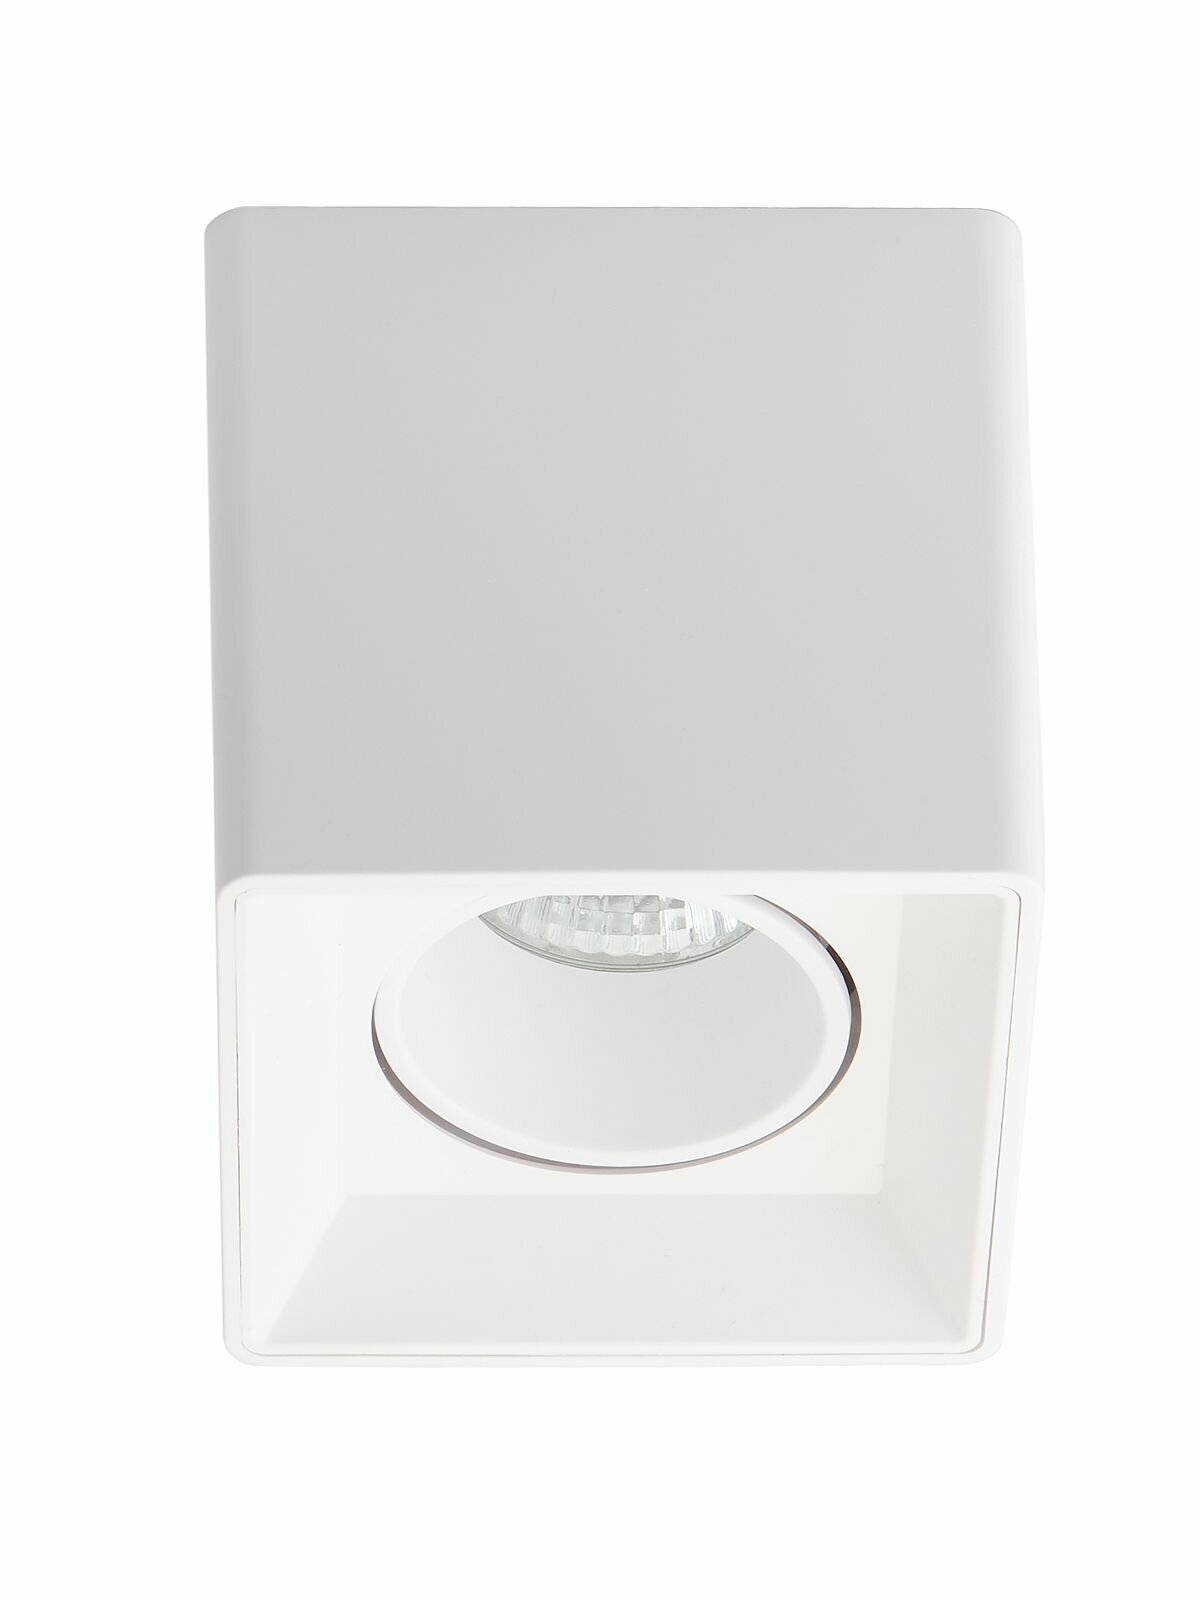 Спот потолочный накладной для натяжных или обычных потолков Maple Lamp PL100-WHITE, белый, GU10